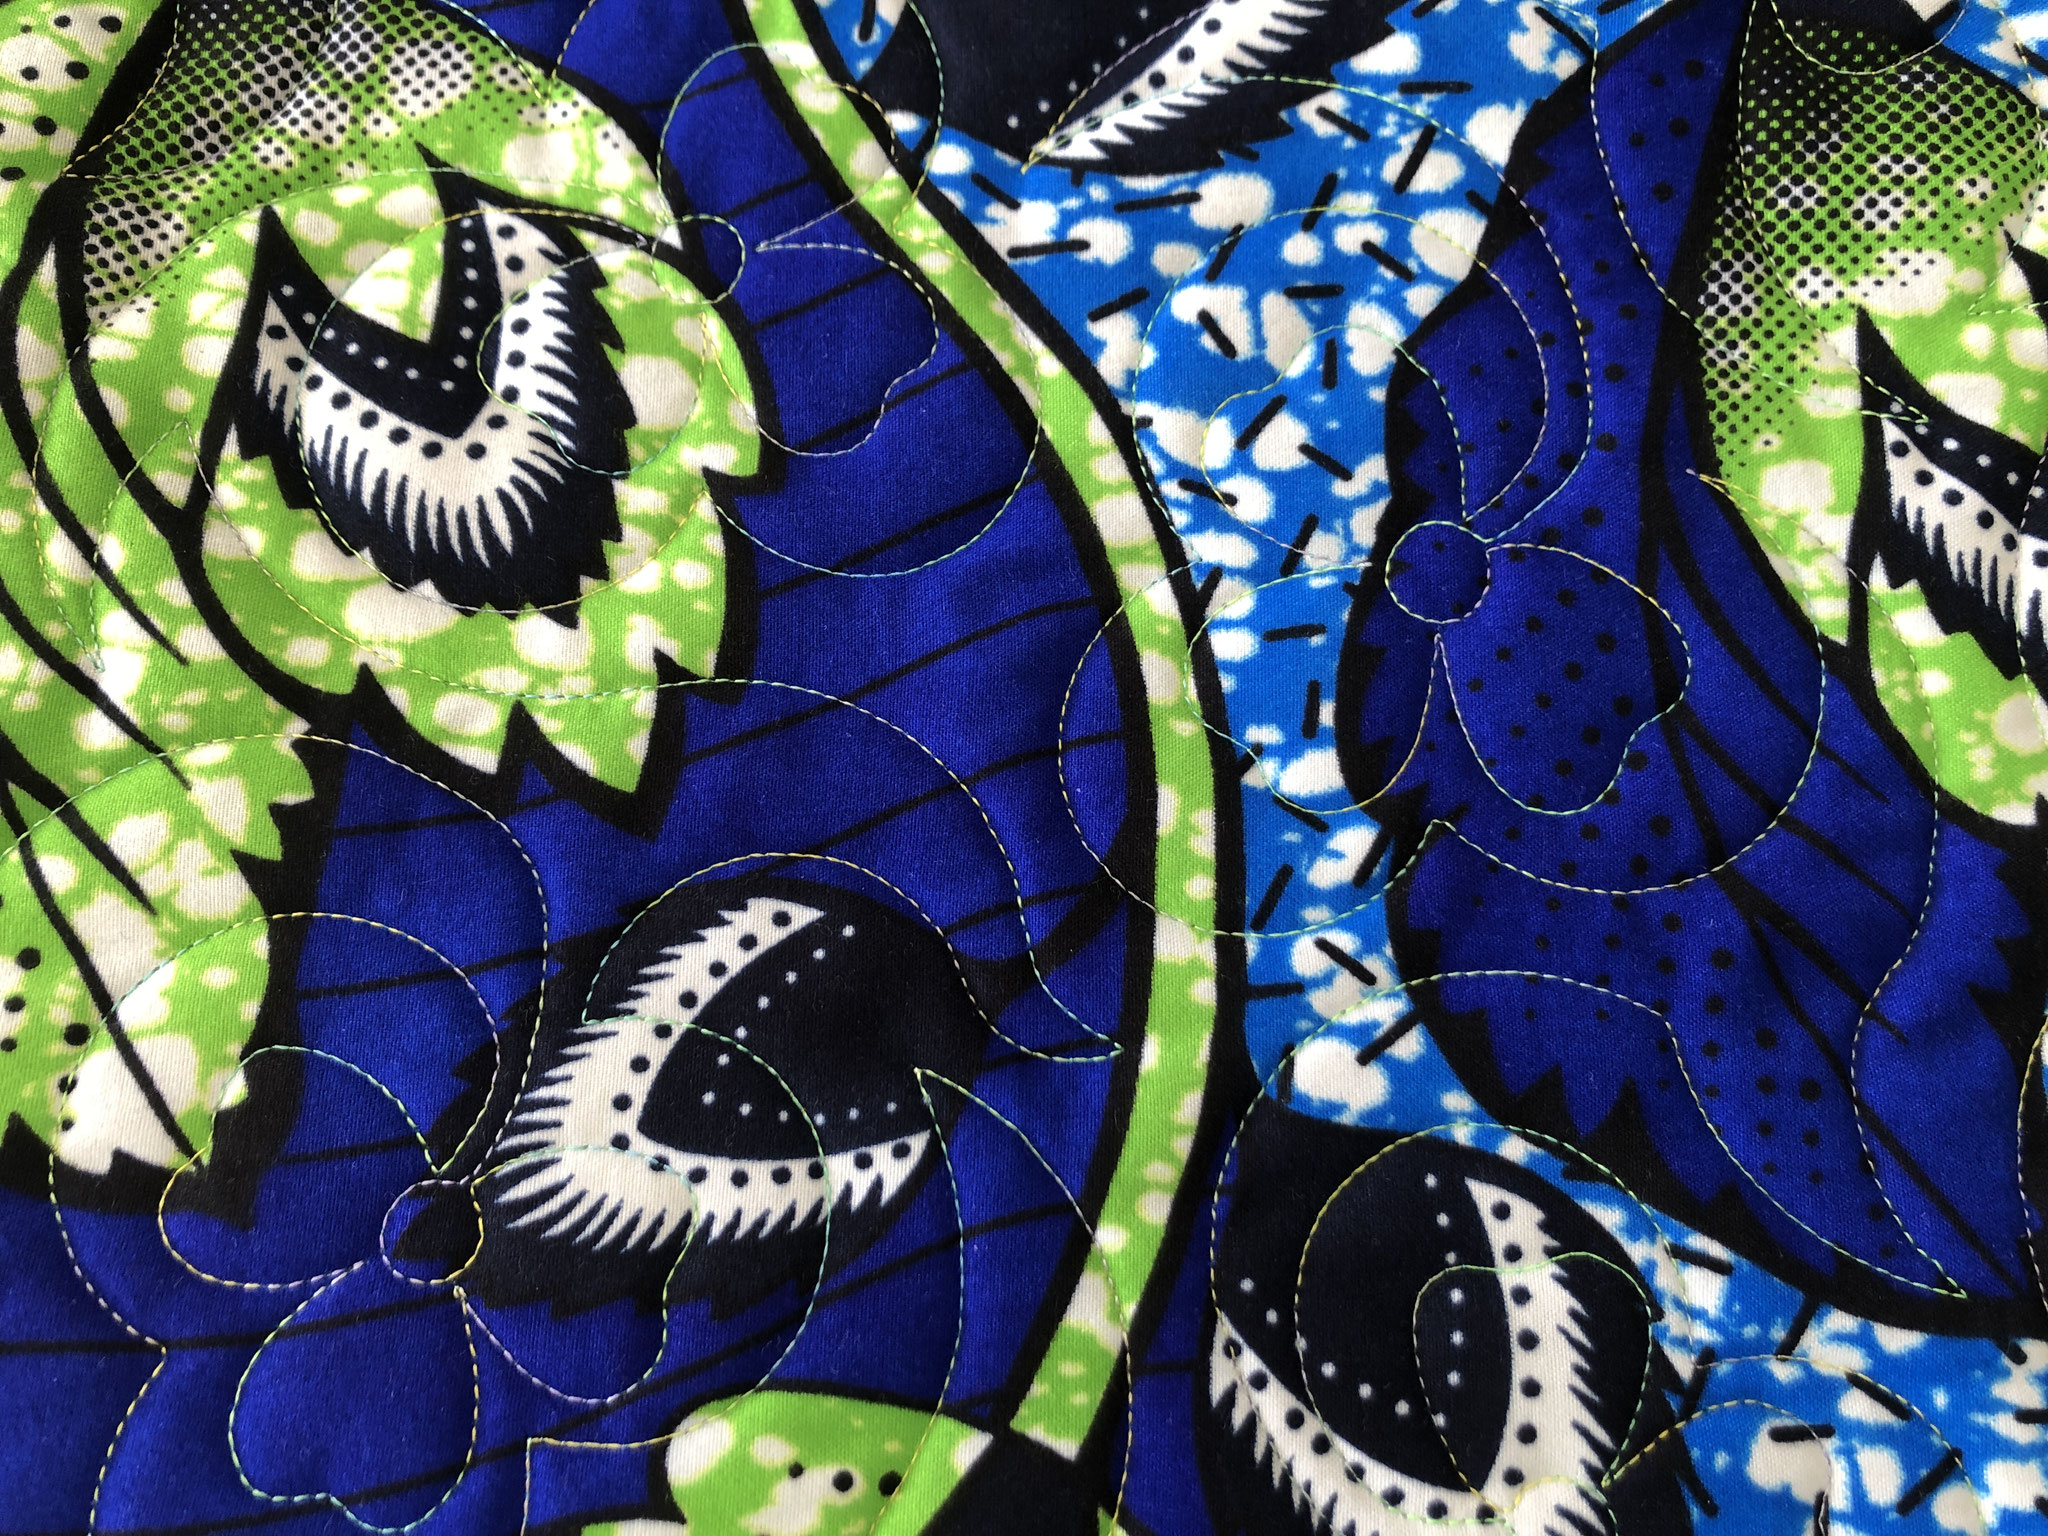 Le dos du patchwork, un très beau tissu africain.